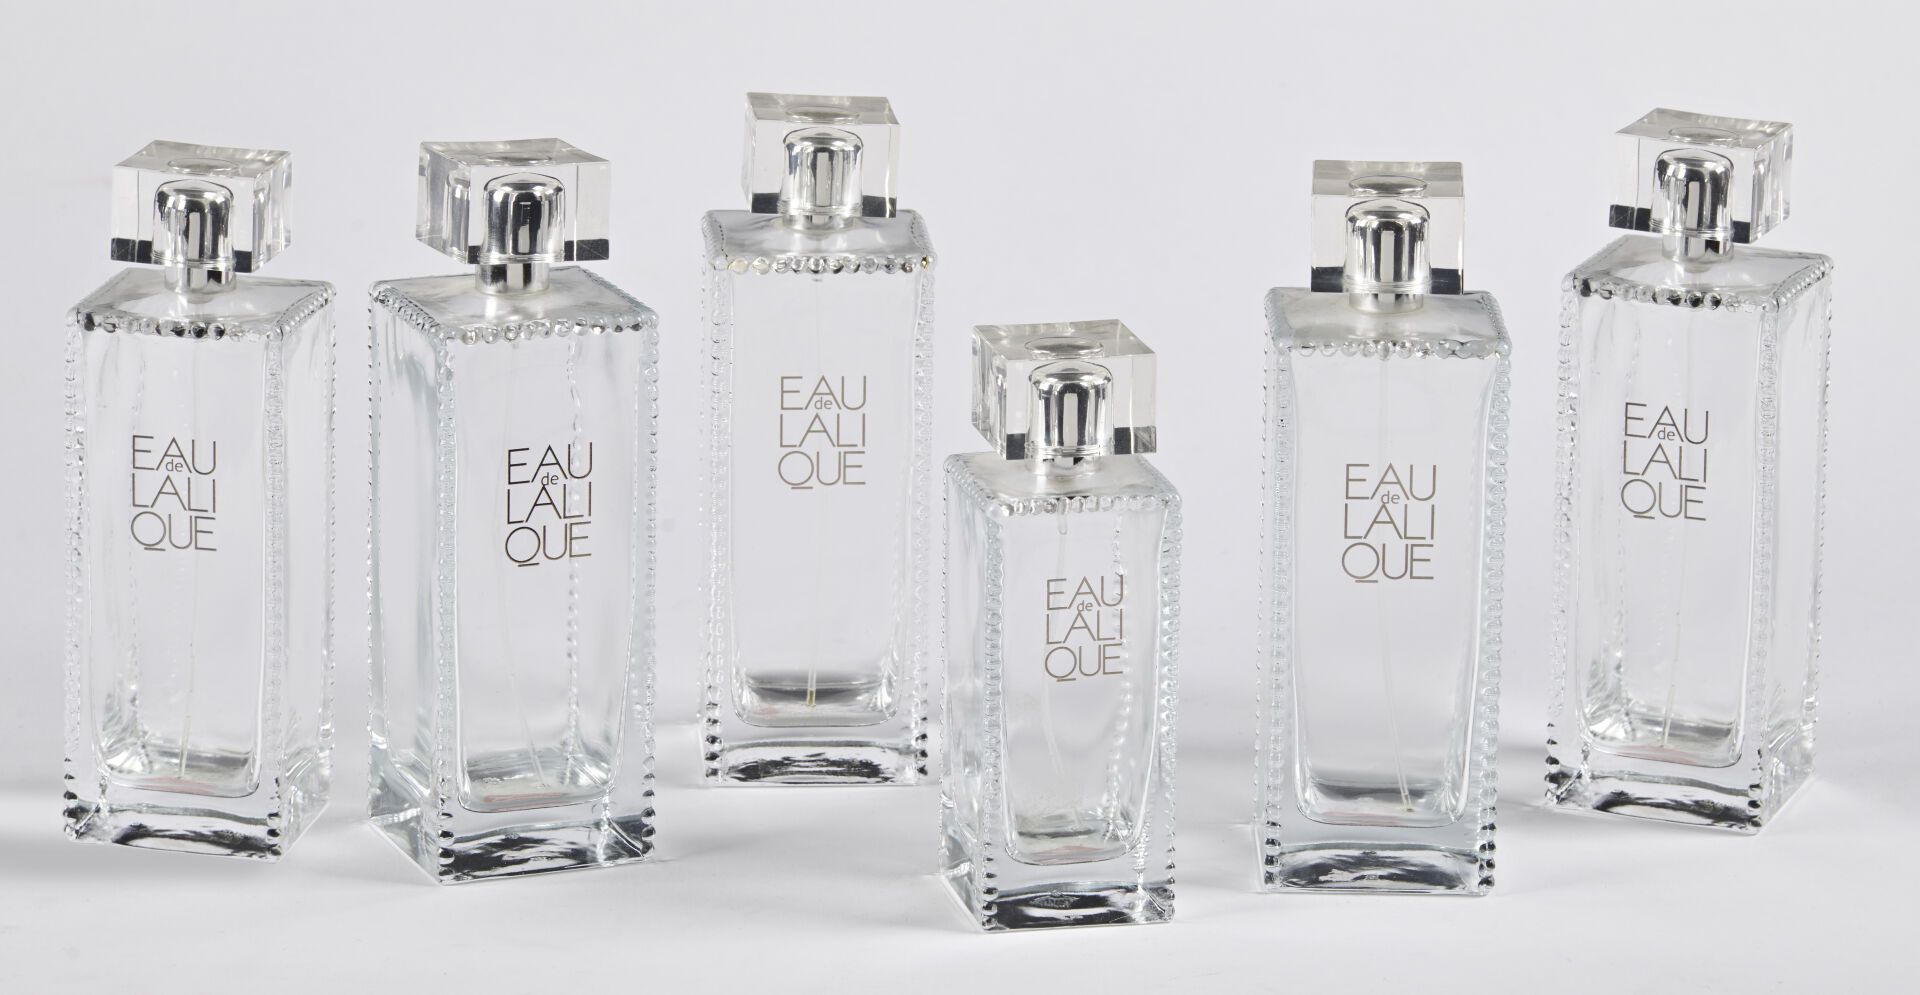 Null 克里斯托尔-拉利克

一套六个 "拉里克之水 "香水瓶。

白色压制的水晶样板，缎面和光面，以及白色有机玻璃瓶塞。

正面有标题。

高度为16厘米-&hellip;